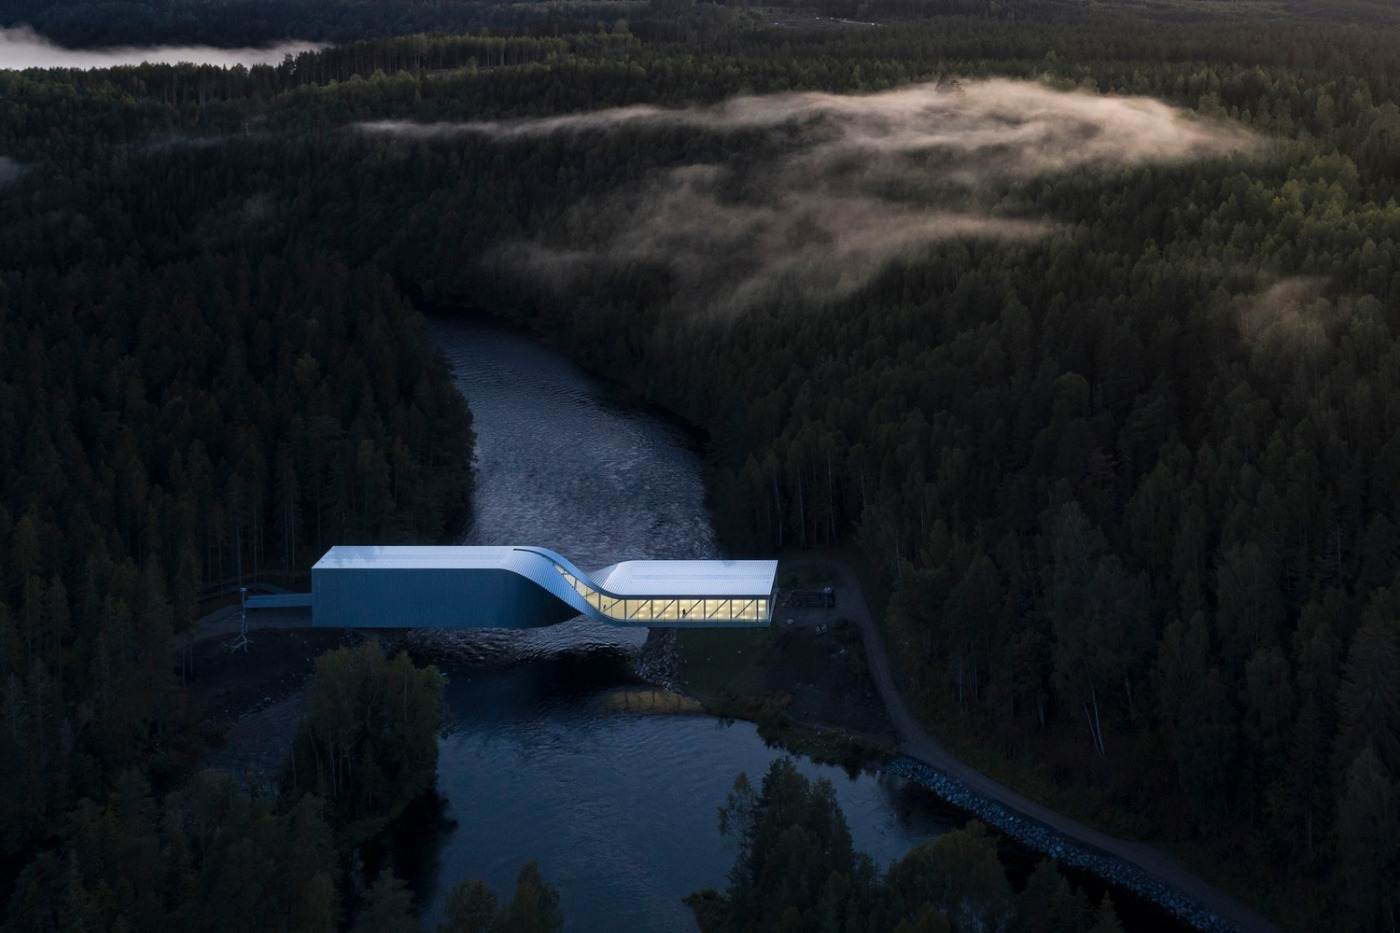 o museu moderno para exposição de arte em valsa norueguesa como uma ponte sobre o rio